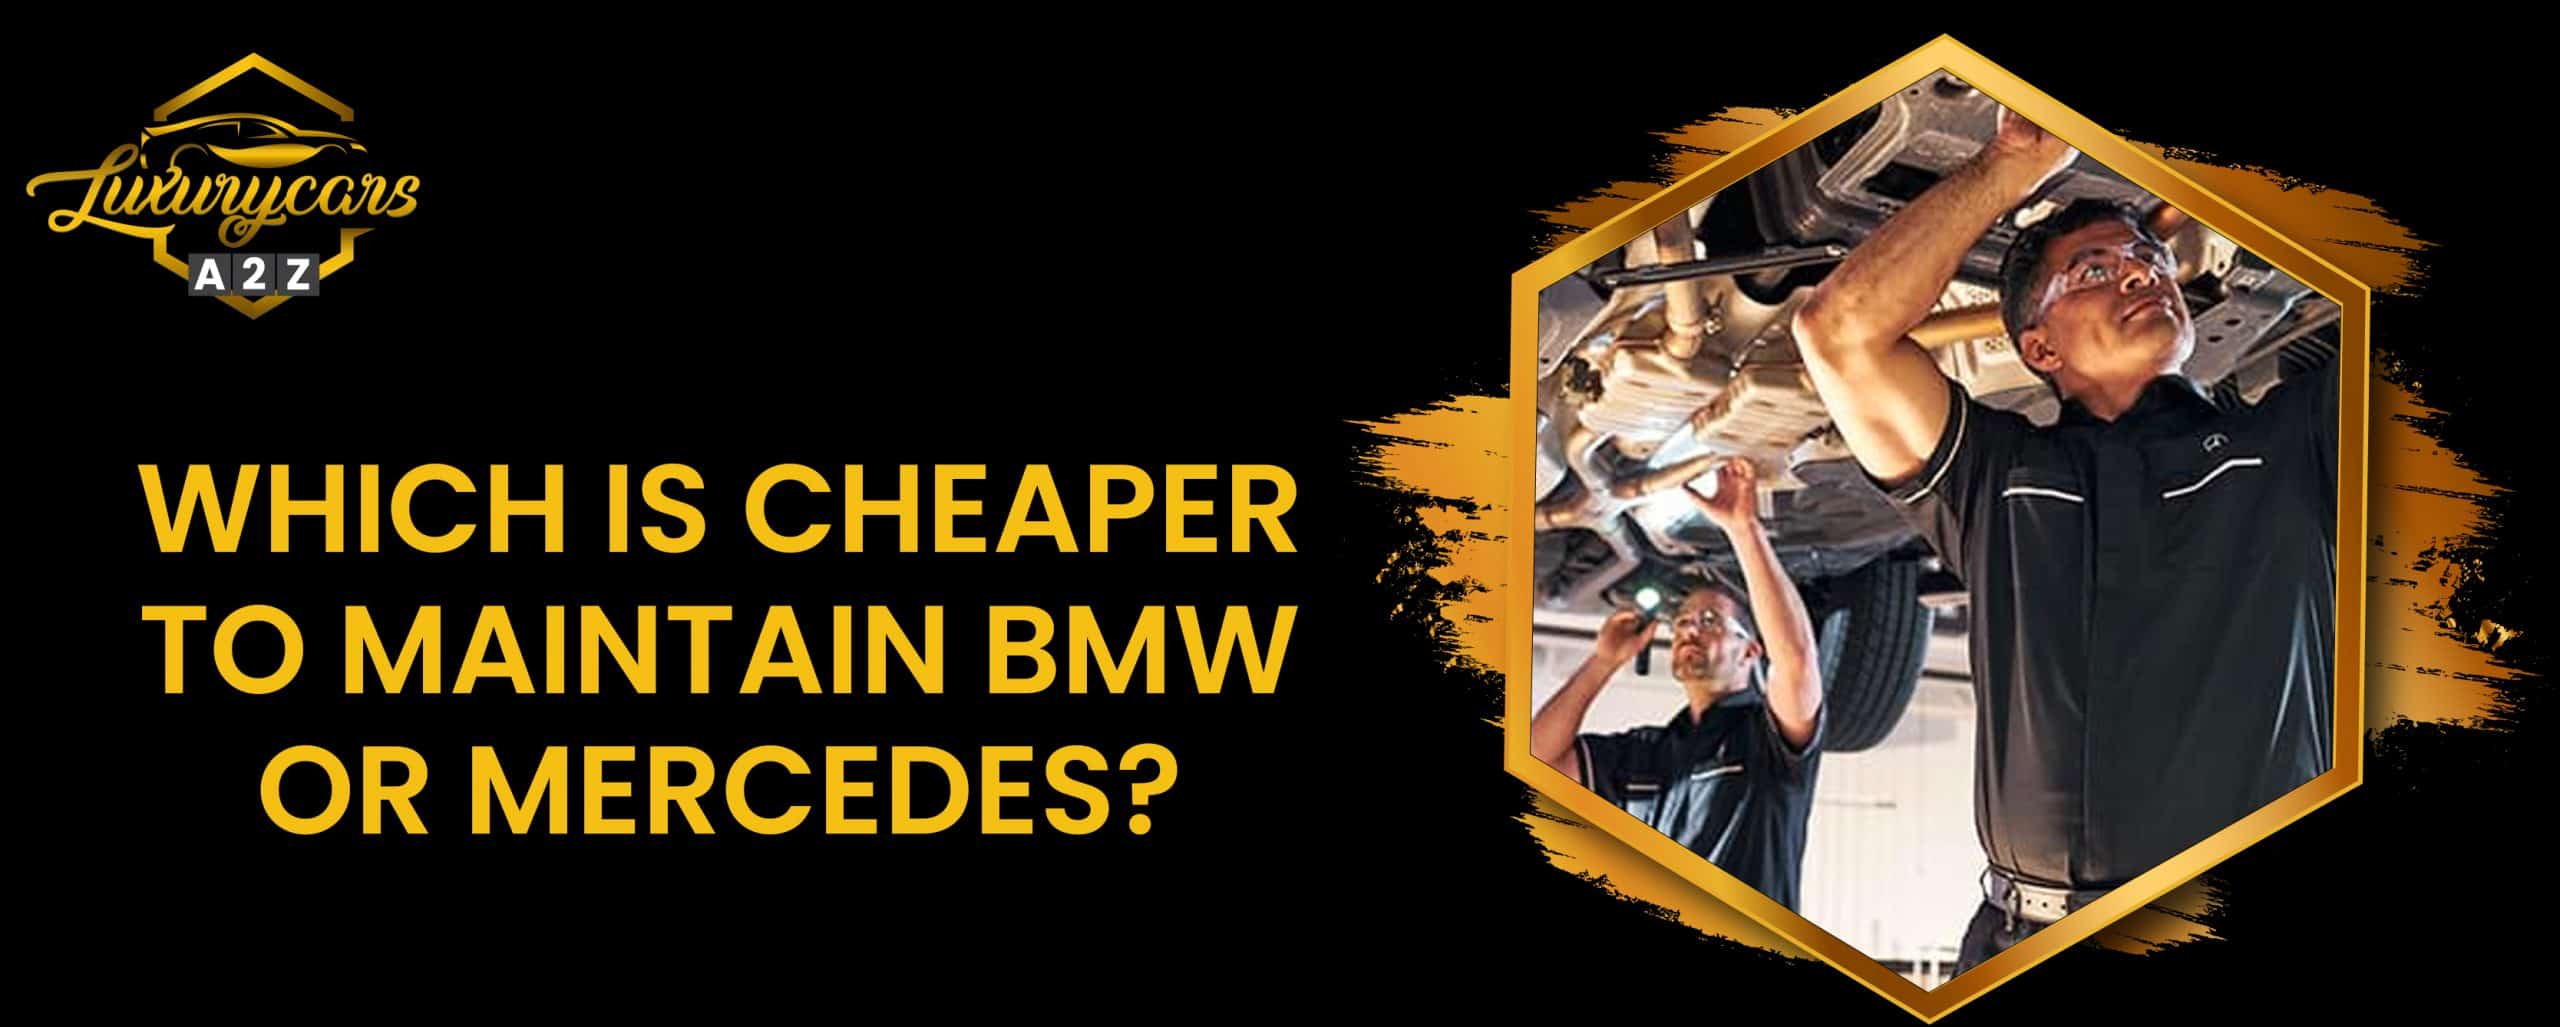 Qu'est-ce qui est le moins cher à entretenir, BMW ou Mercedes ?